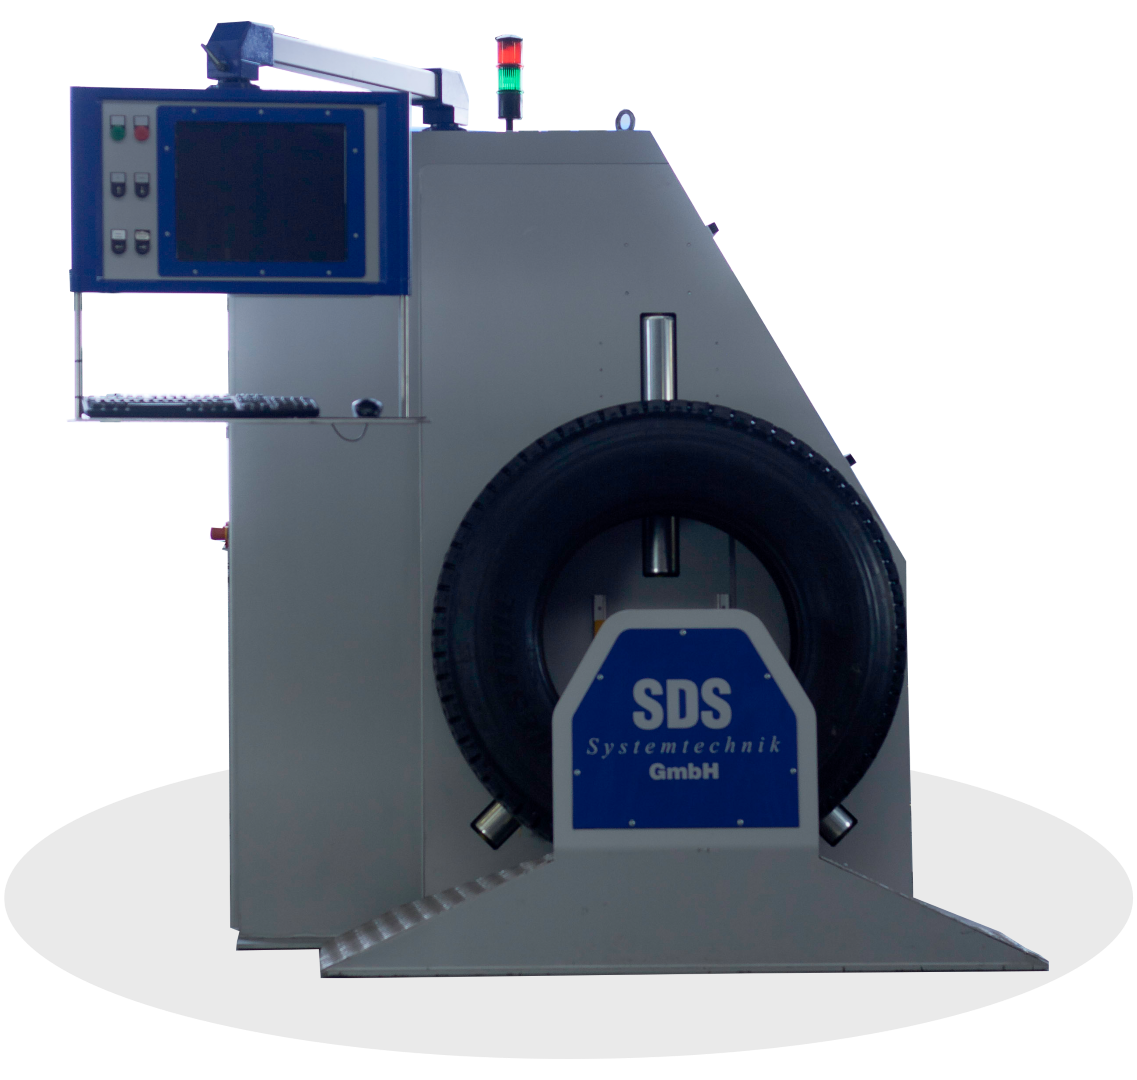 SDS Systemtechnik – LMS Offline (Laser Marking System)